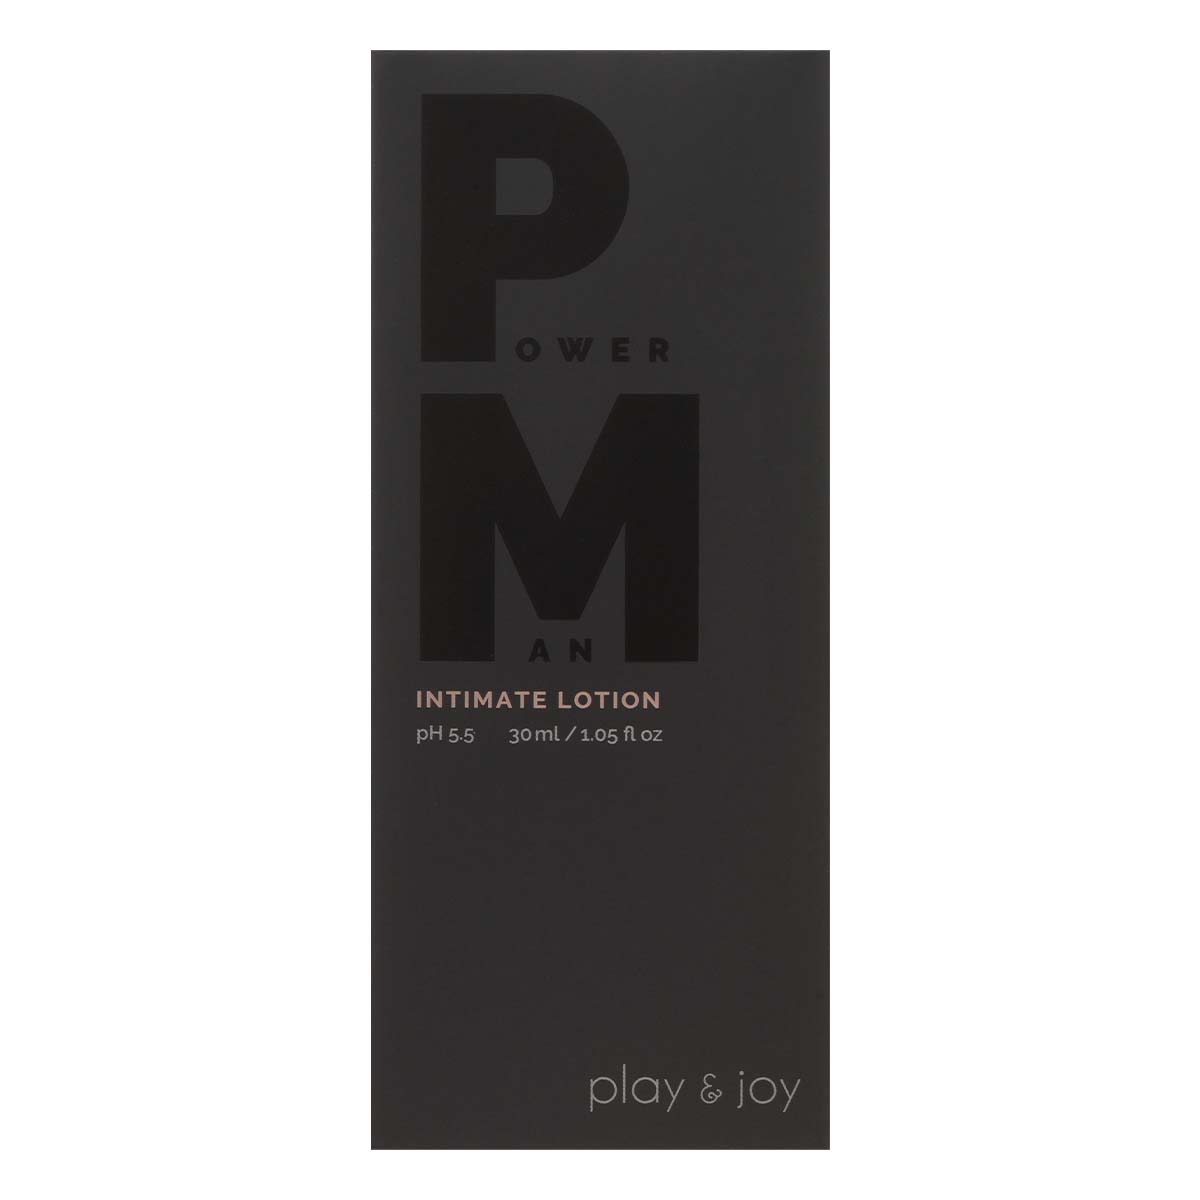 PLAY & JOY POWER MAN Intimate Lotion 30ml-p_2